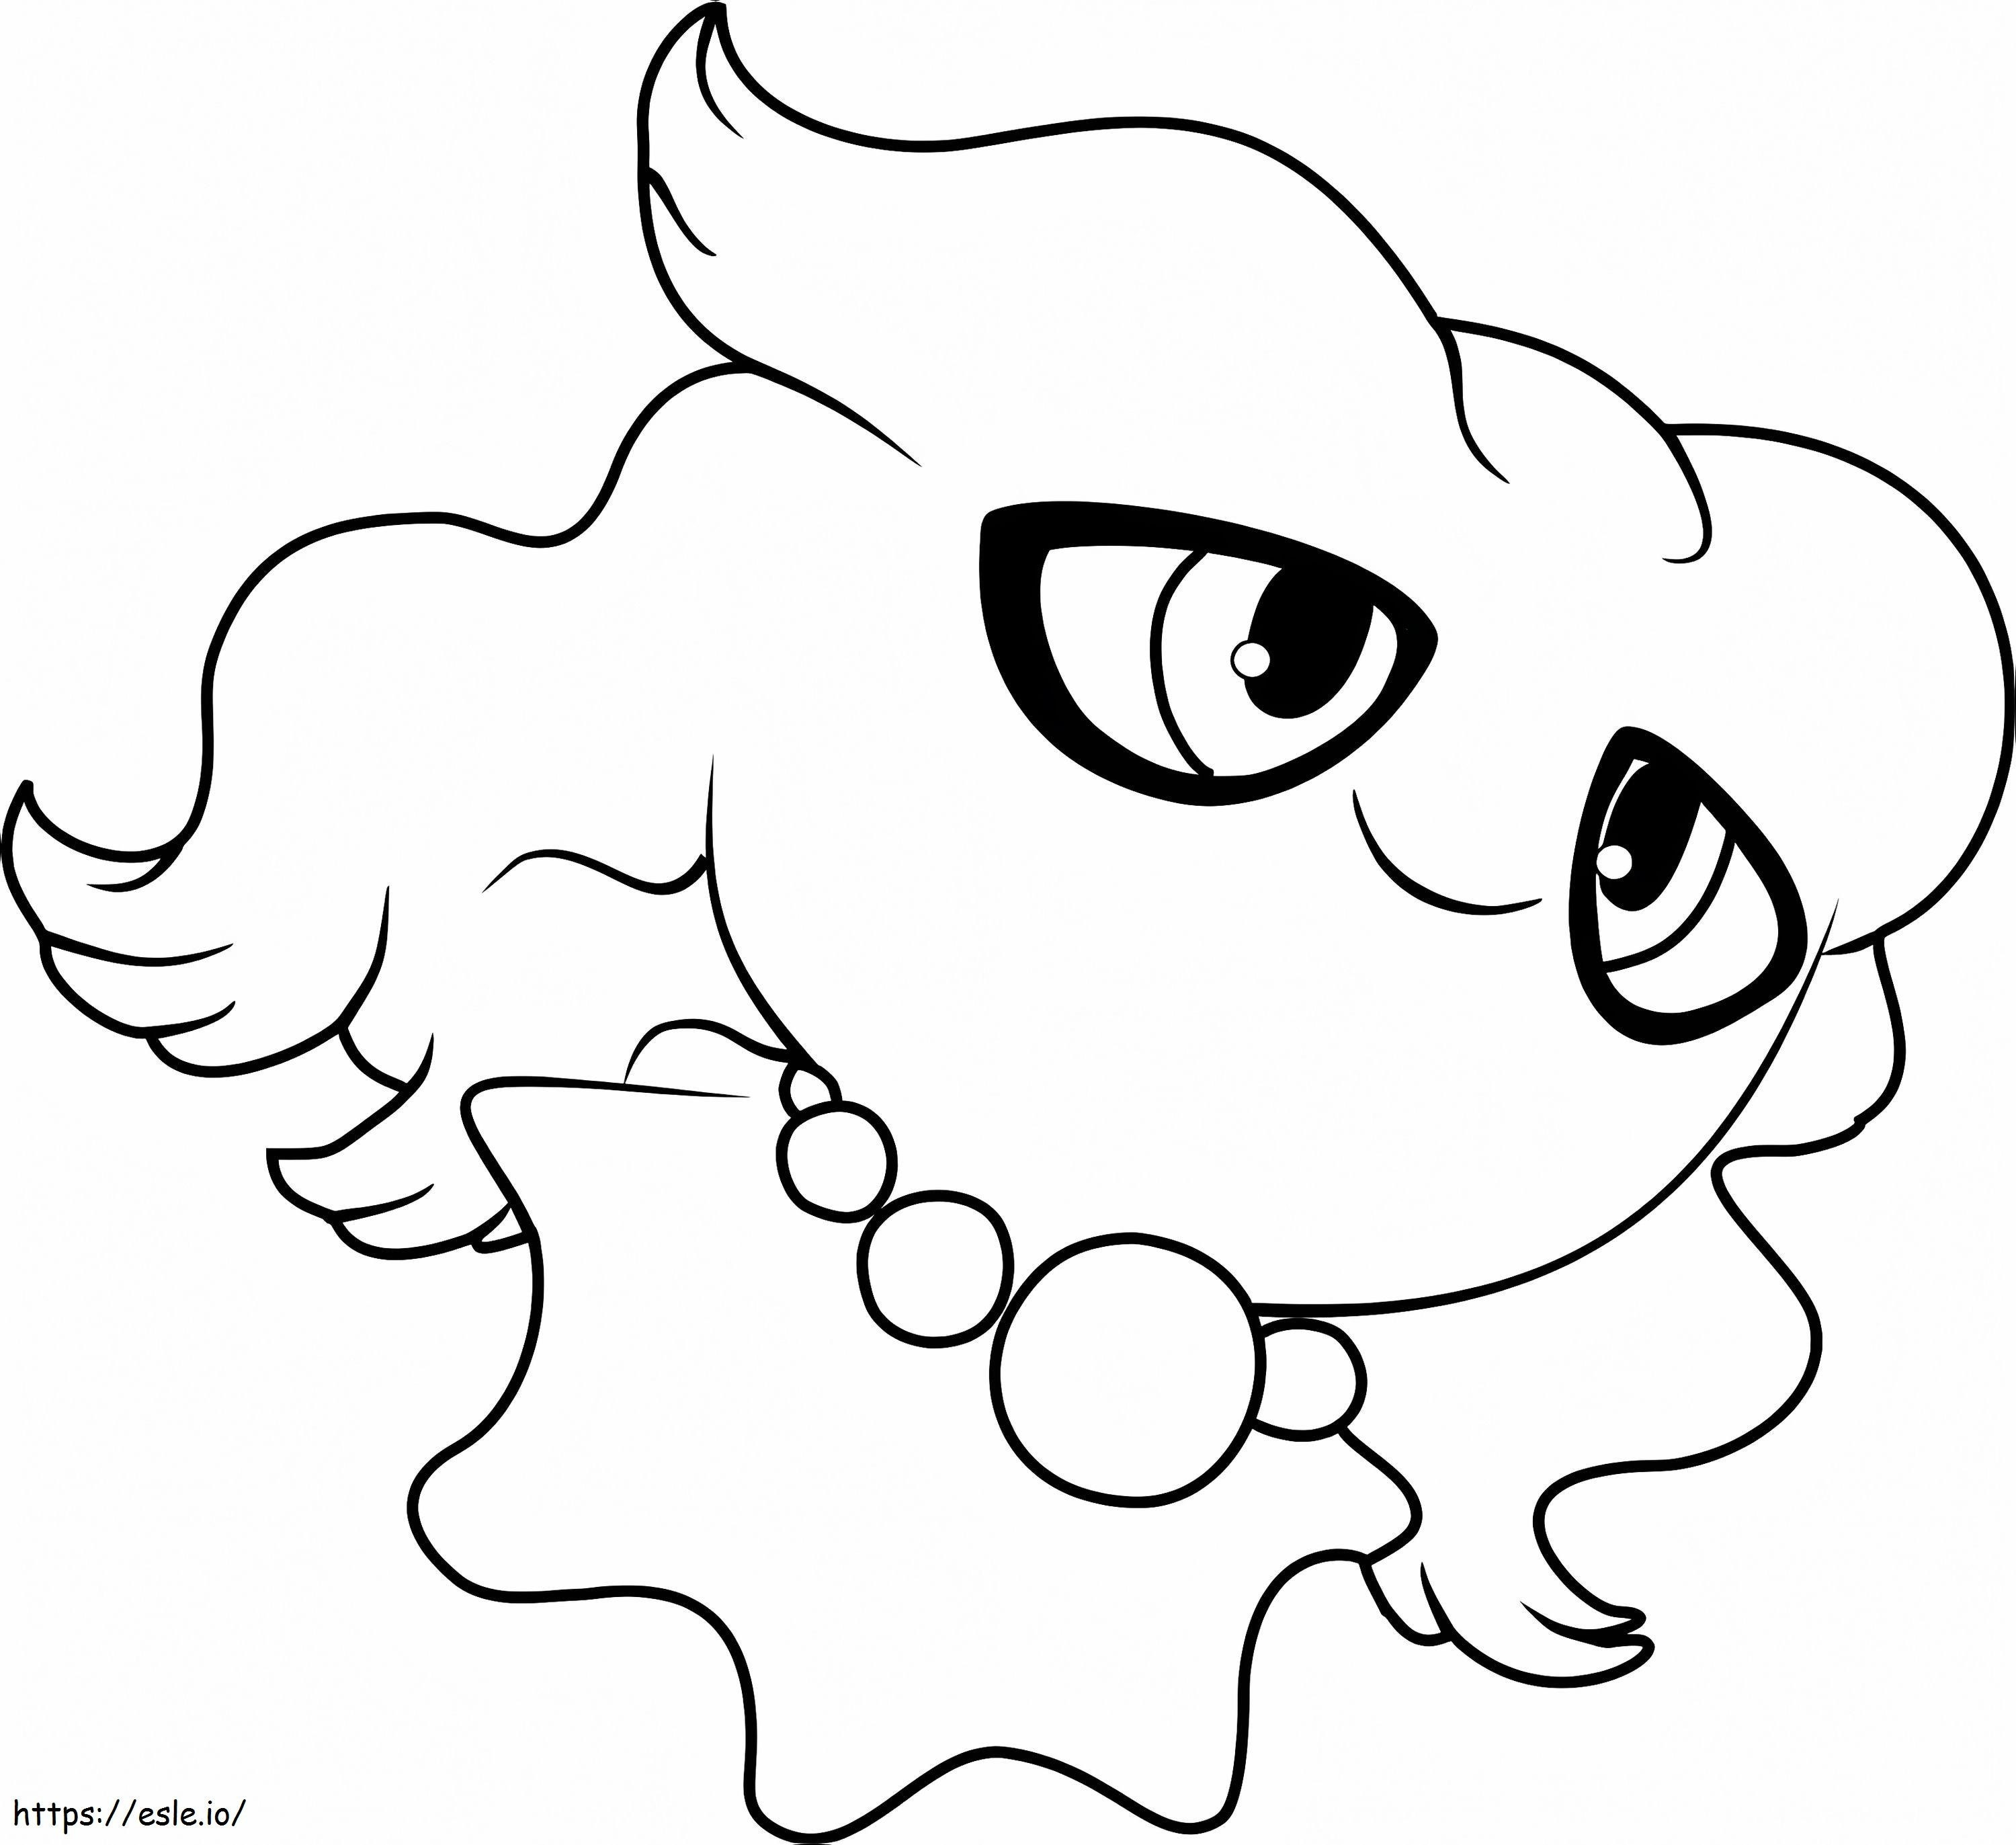 Coloriage Pokémon Misdreavus imprimable à imprimer dessin